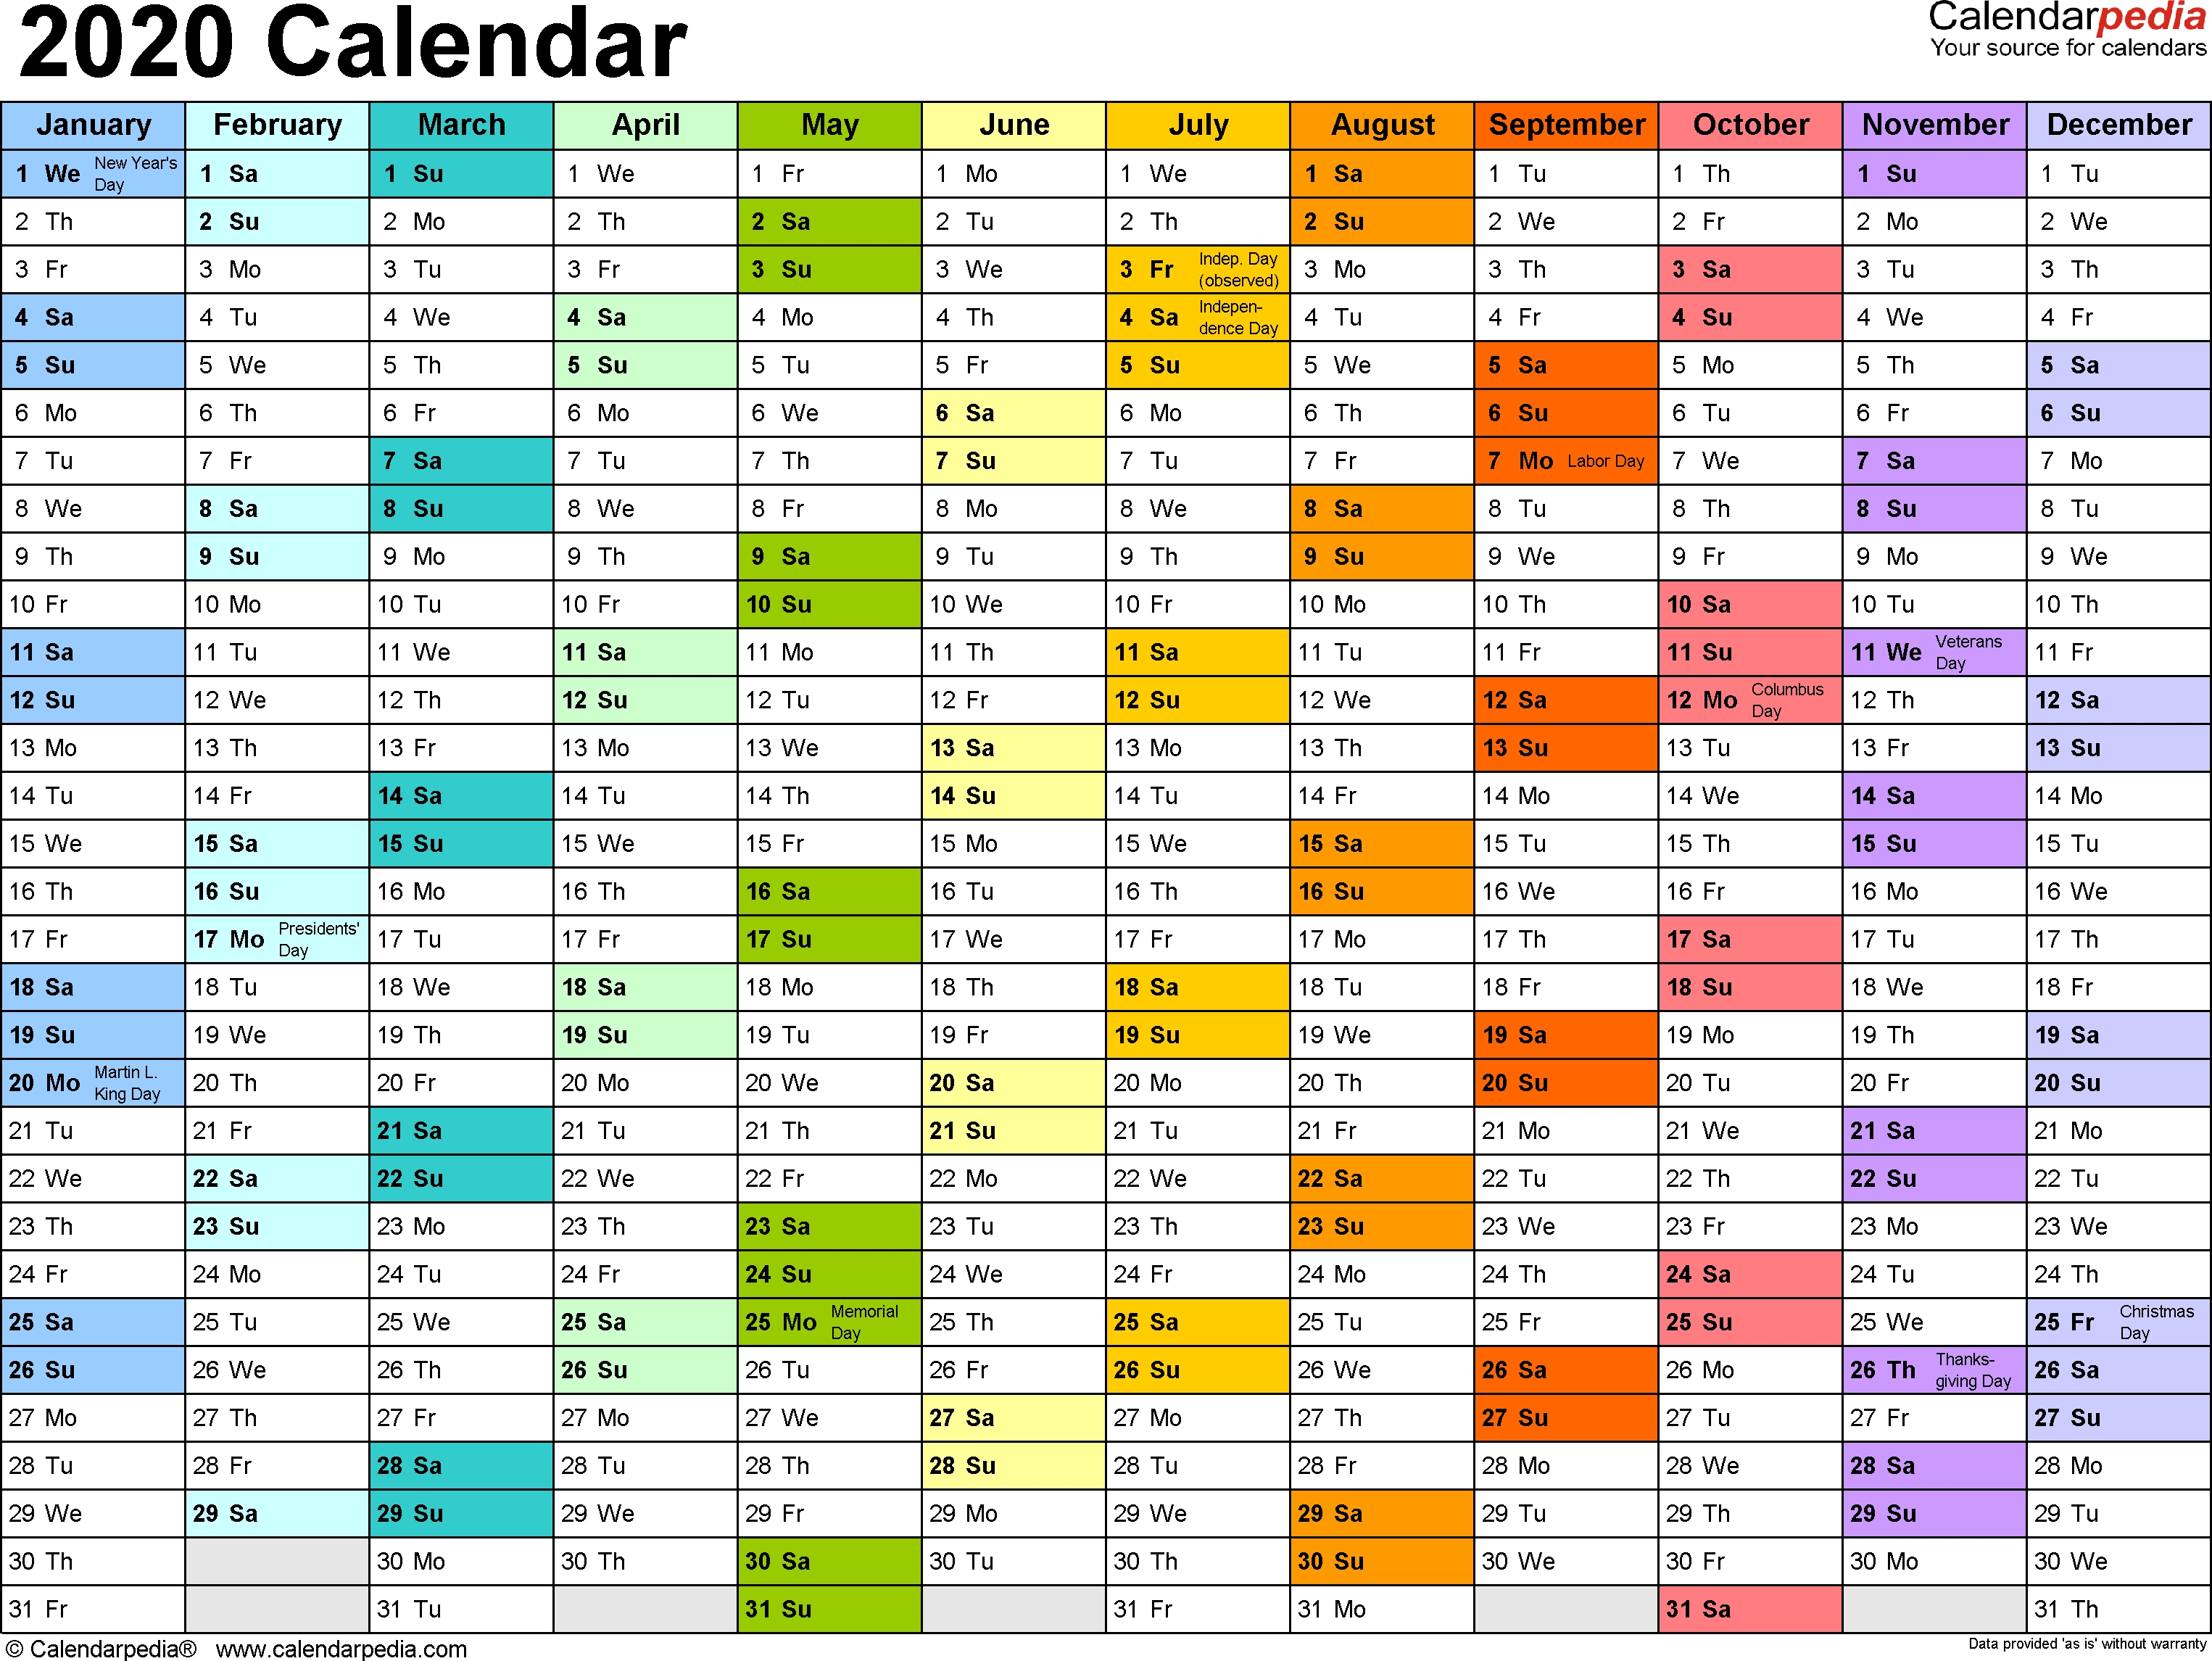 2020 Calendar - 17 Free Printable Word Calendar Templates Dashing 2020 Calendar In Word